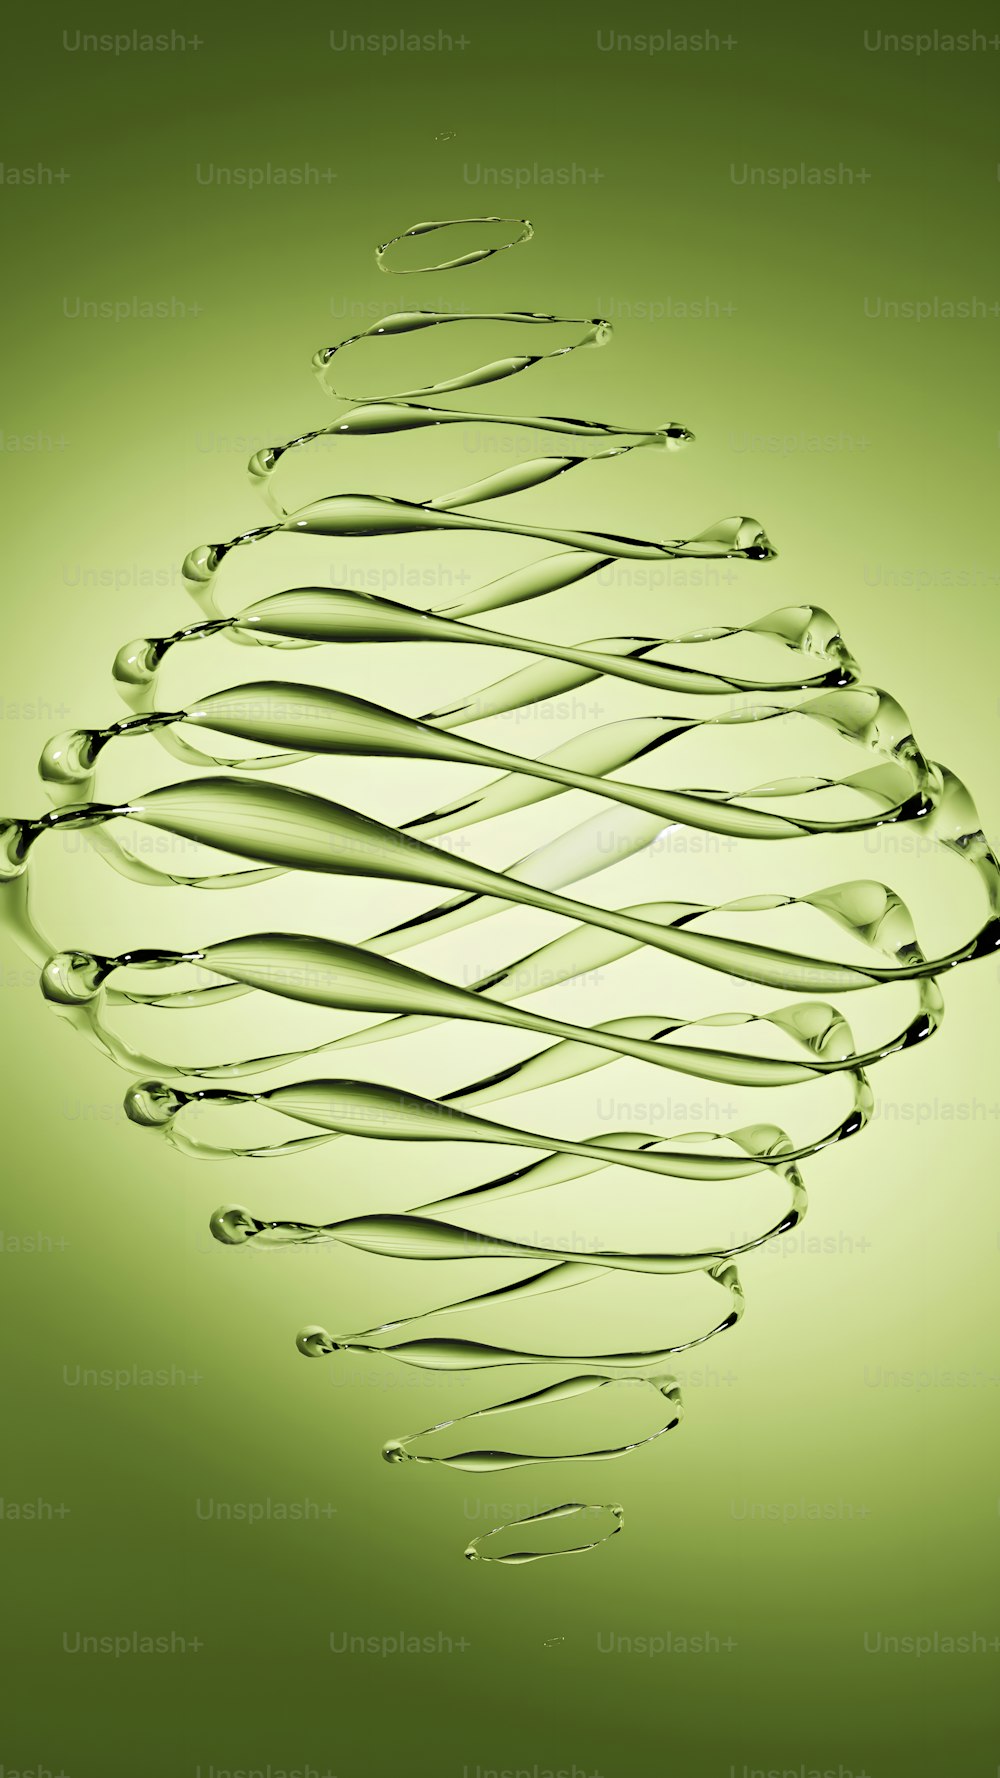 un fond vert avec un dessin en spirale